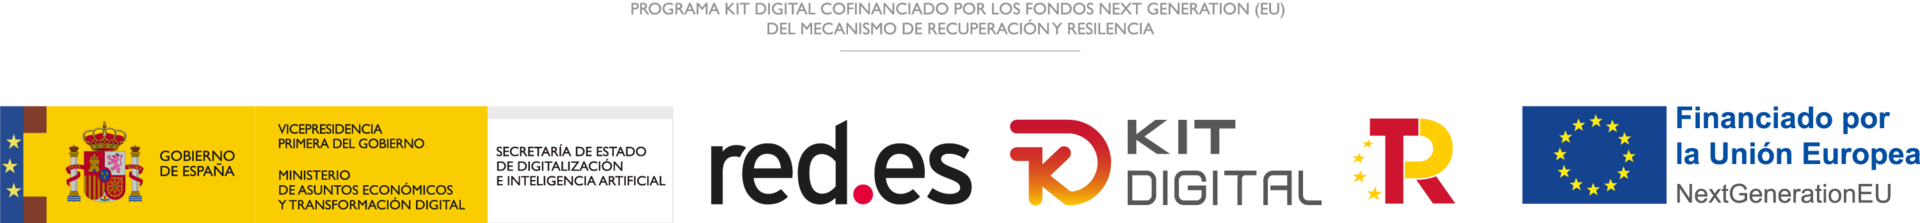 Logotipos del programa Kit Digital de izquierda a derecha: Gobierno de España, Red.es, Kit Digital y Financiado por la UE NextGenerationEU.